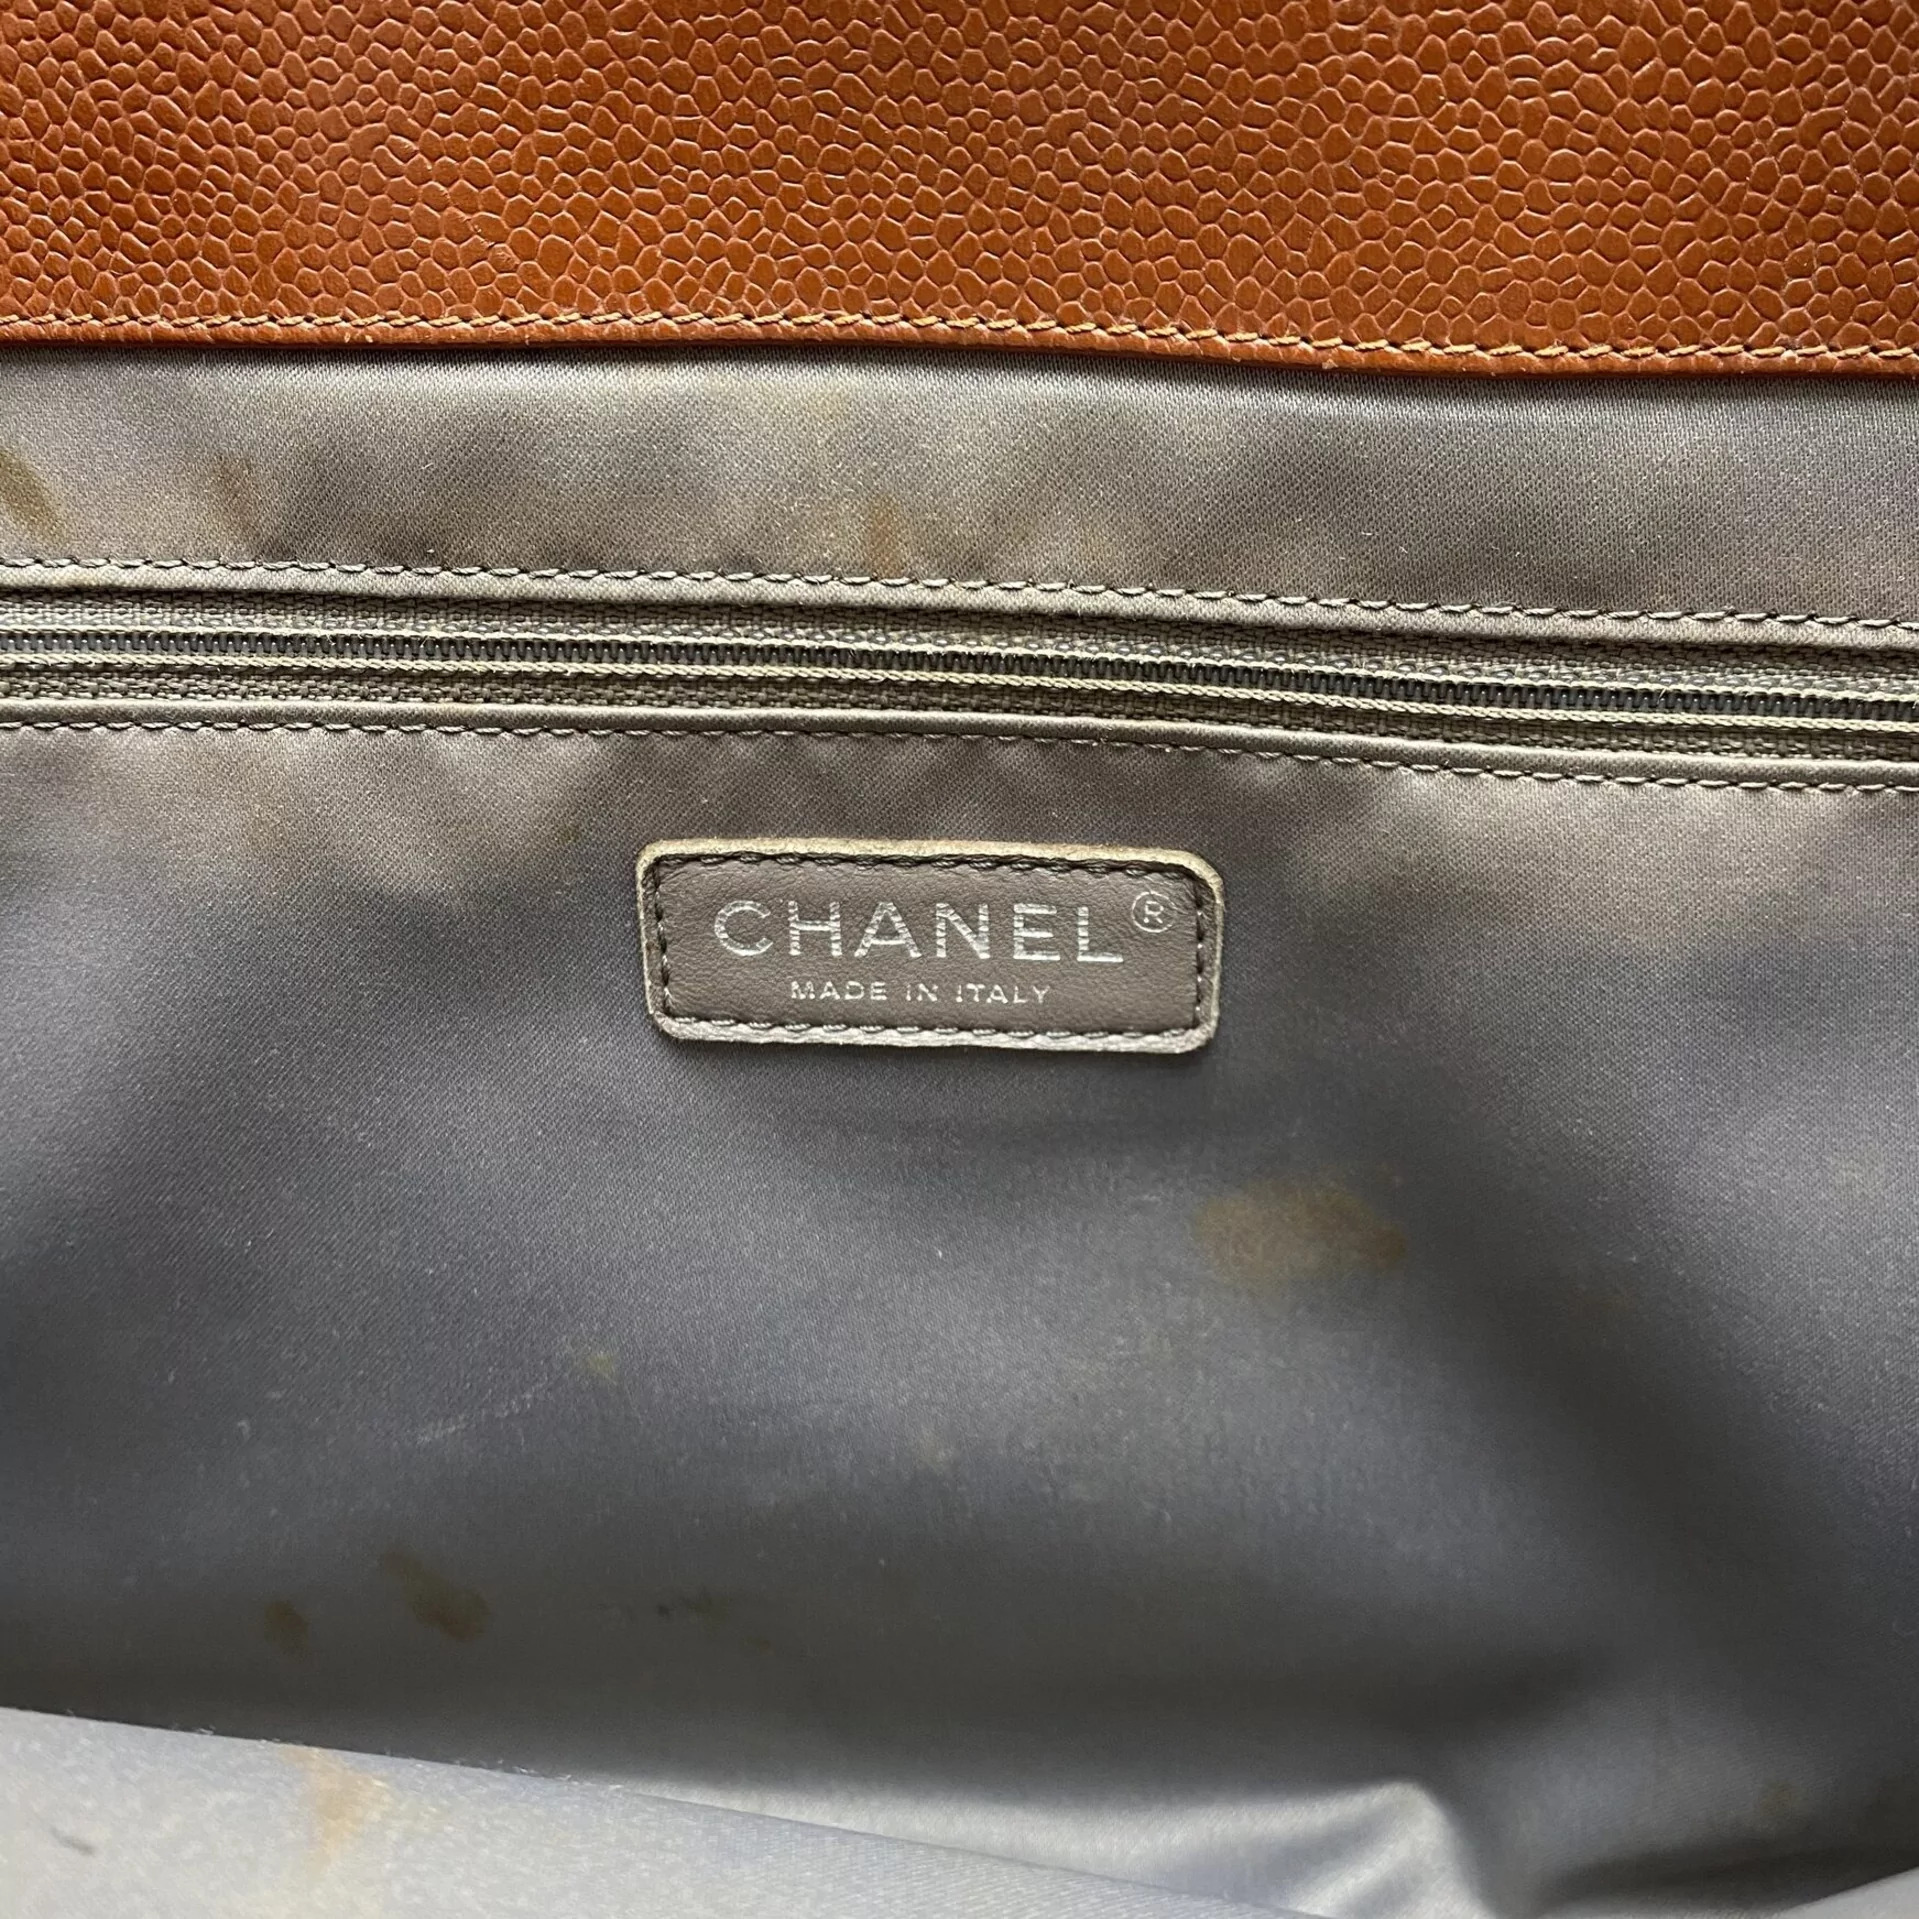 Bolsa Chanel XL Grand Shopping Tote Marrom